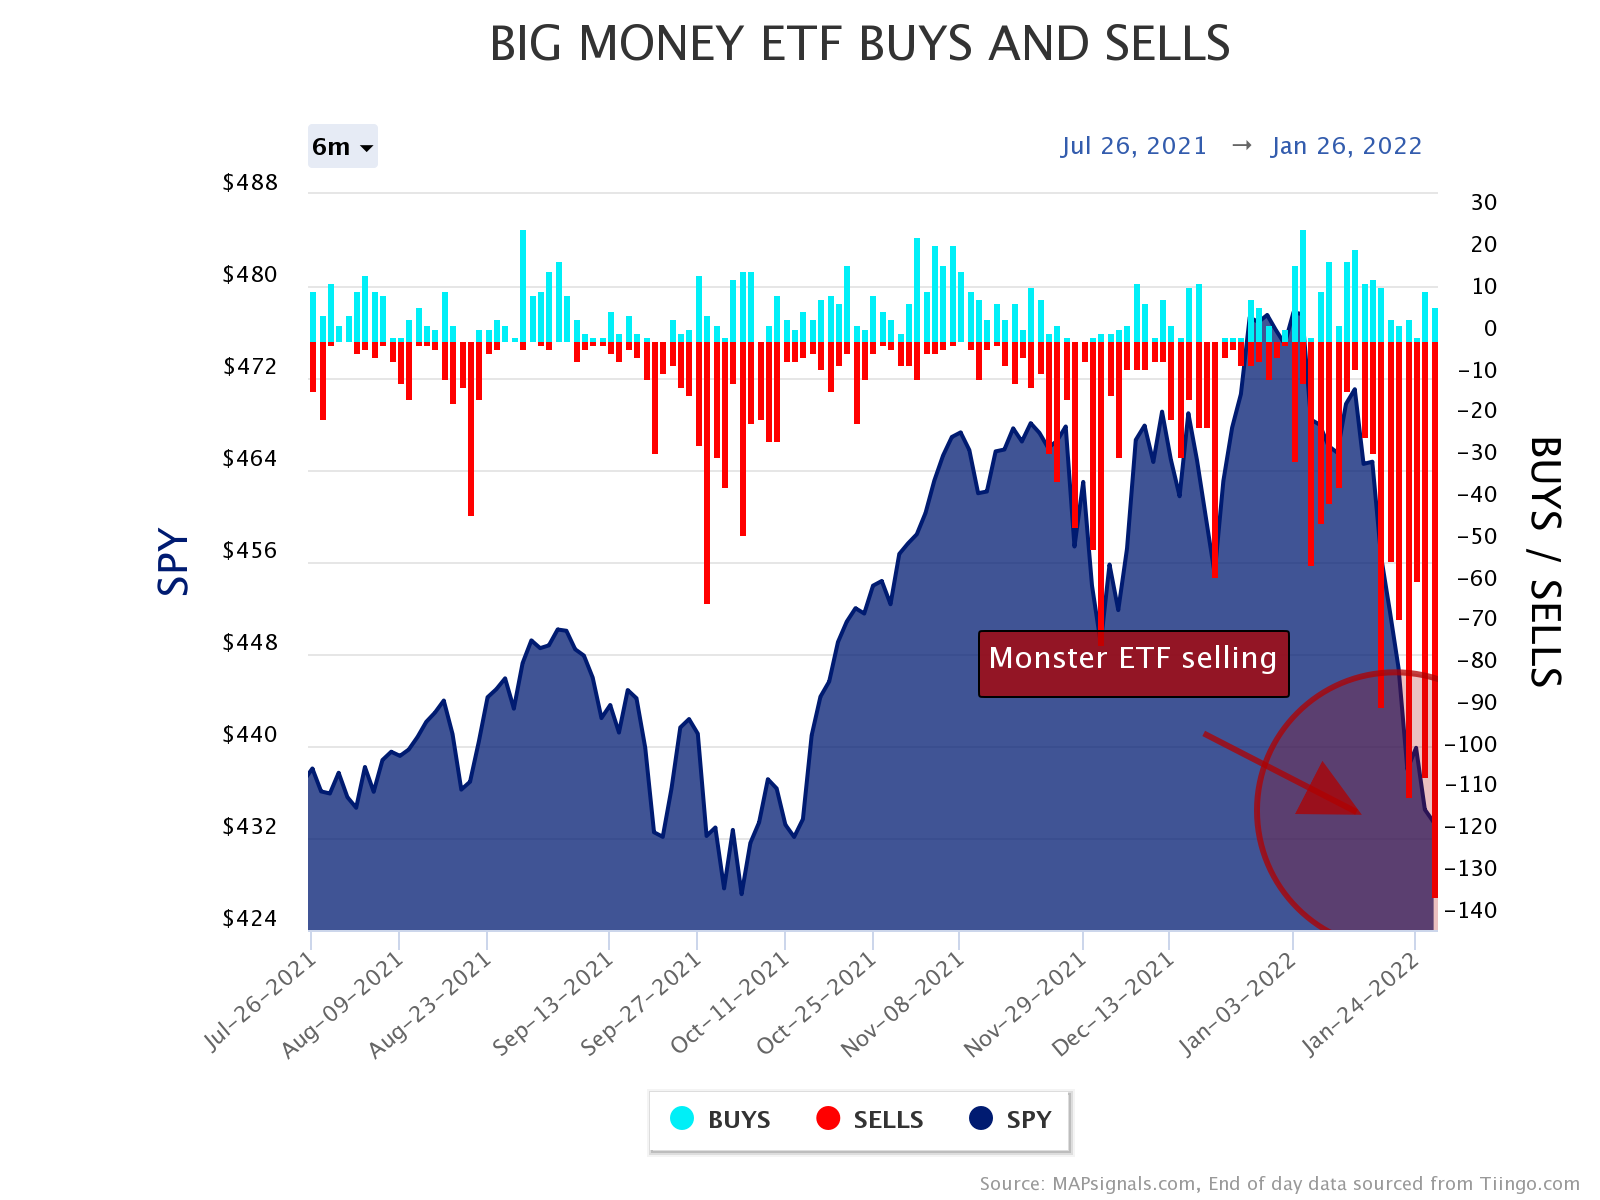 monster ETF selling